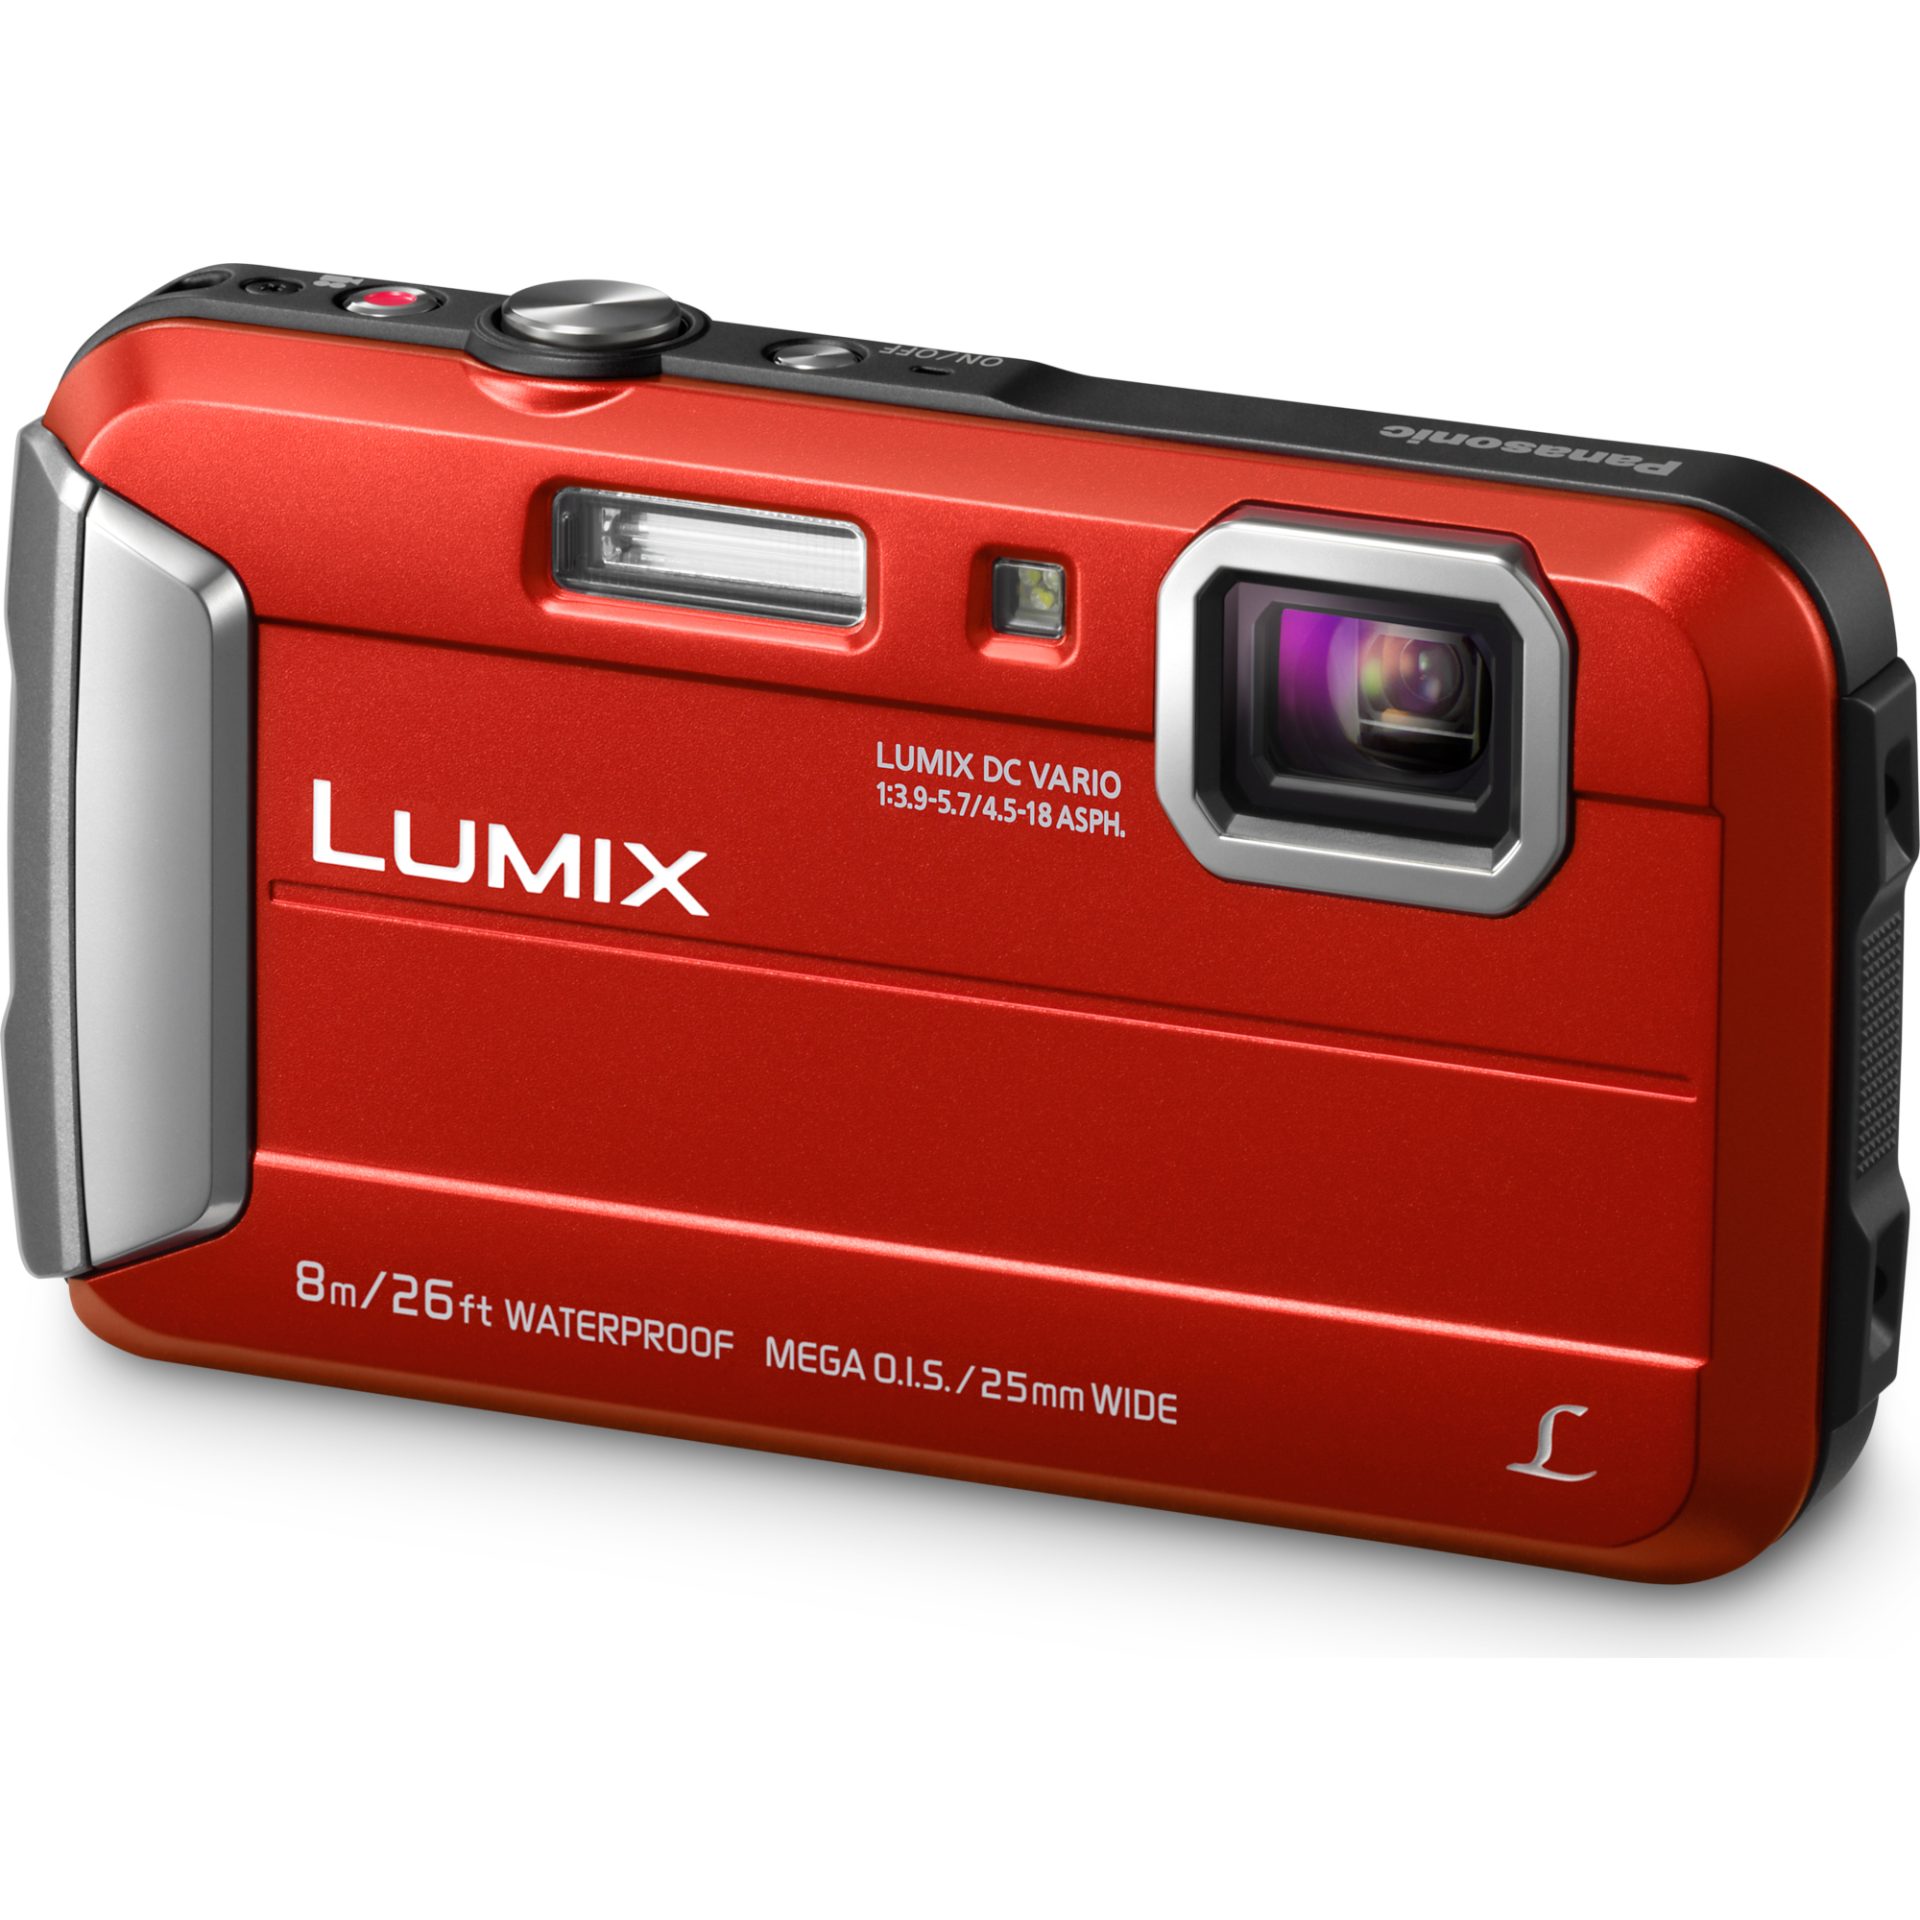 Panasonic DMC-FT30 Lumix kompaktní fotoaparát (vodotěsný až 8m, nárazuvzdorný a mrazuvzdorný, 220MB paměti, mega O.I.S., MP4 HD video), červená